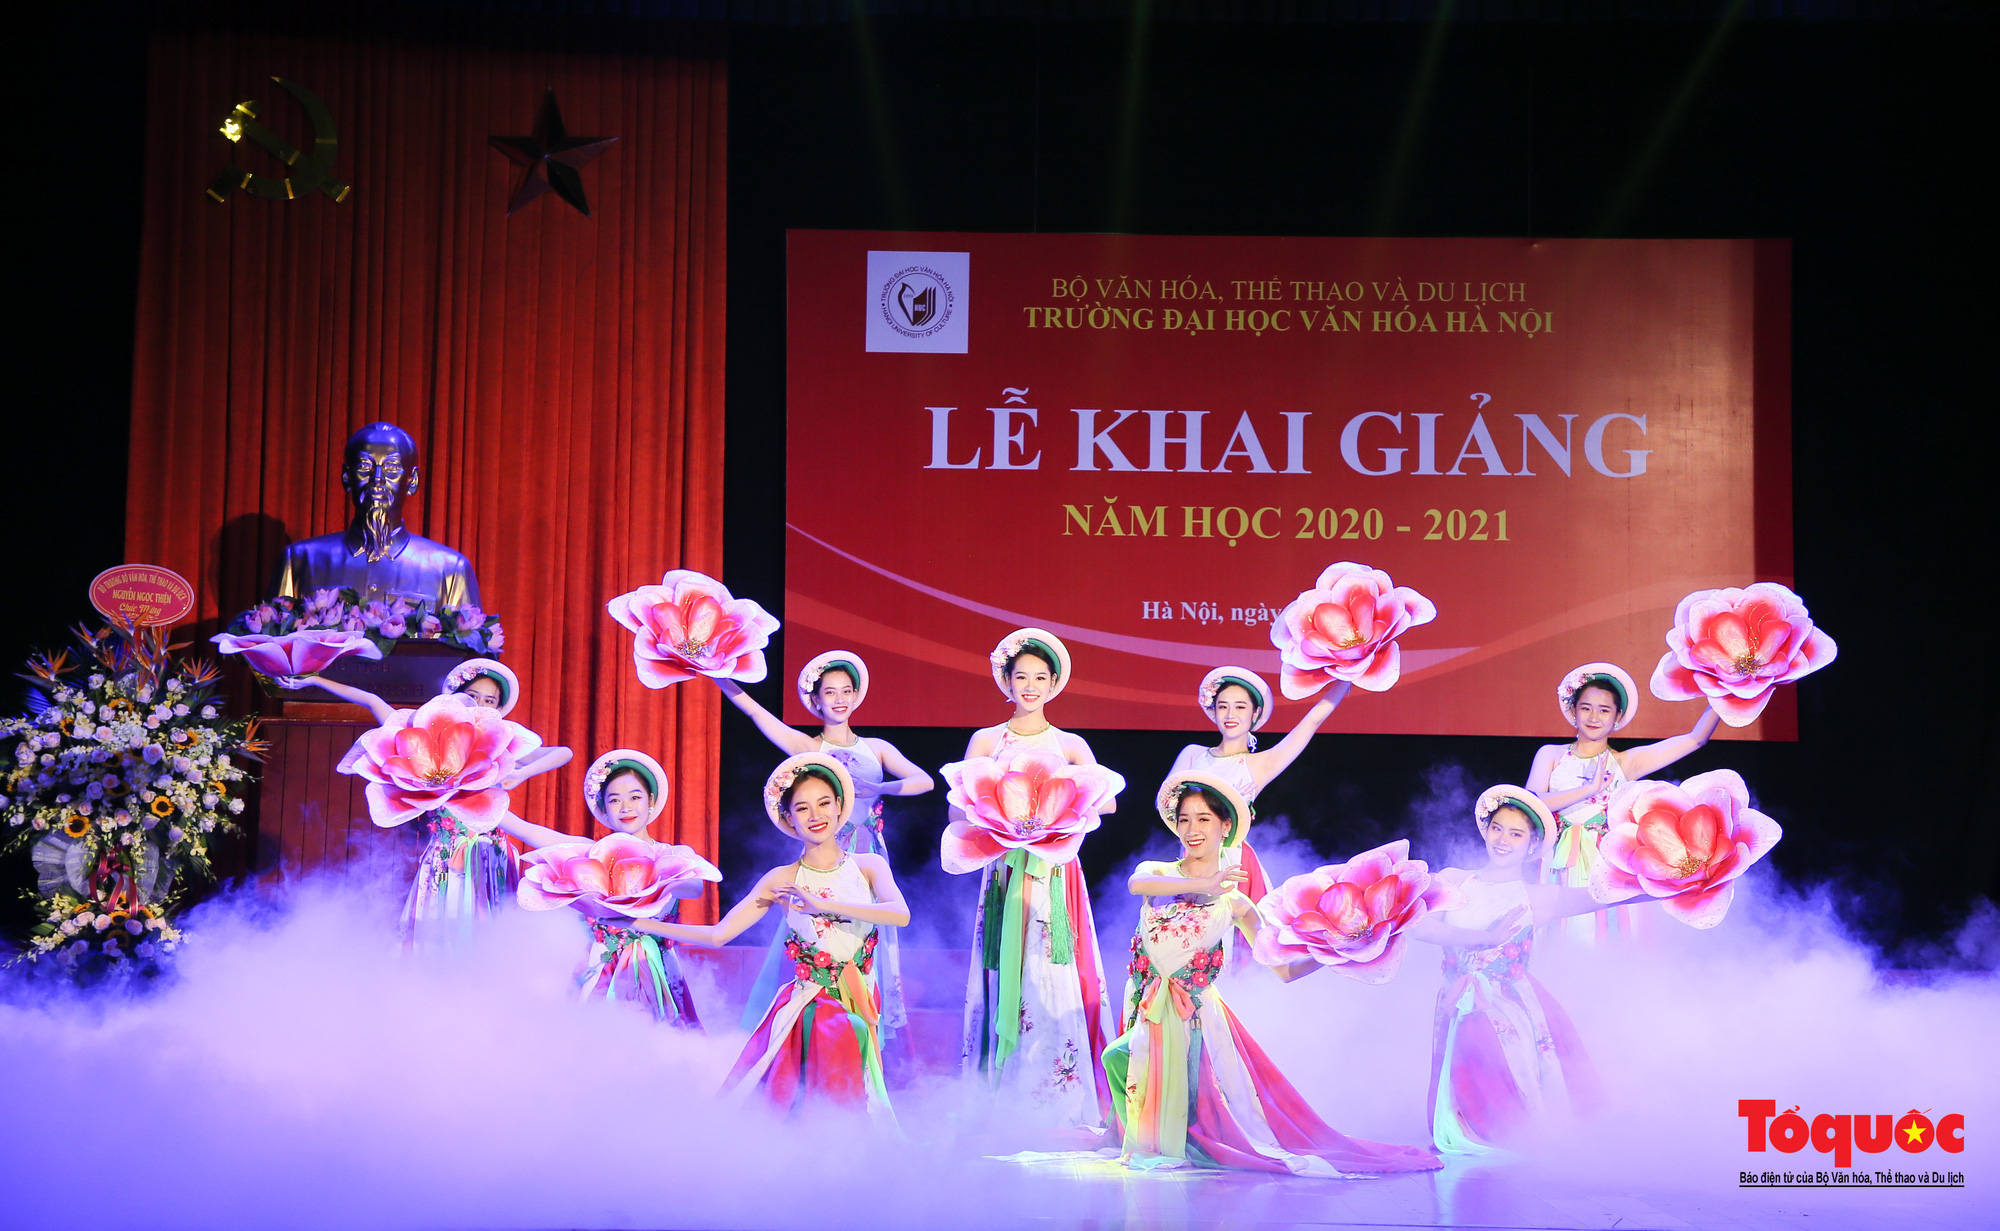 Đại học Văn hóa Hà Nội tiếp tục khẳng định là nơi đào tạo cán bộ văn hoá lớn nhất cả nước - Ảnh 1.